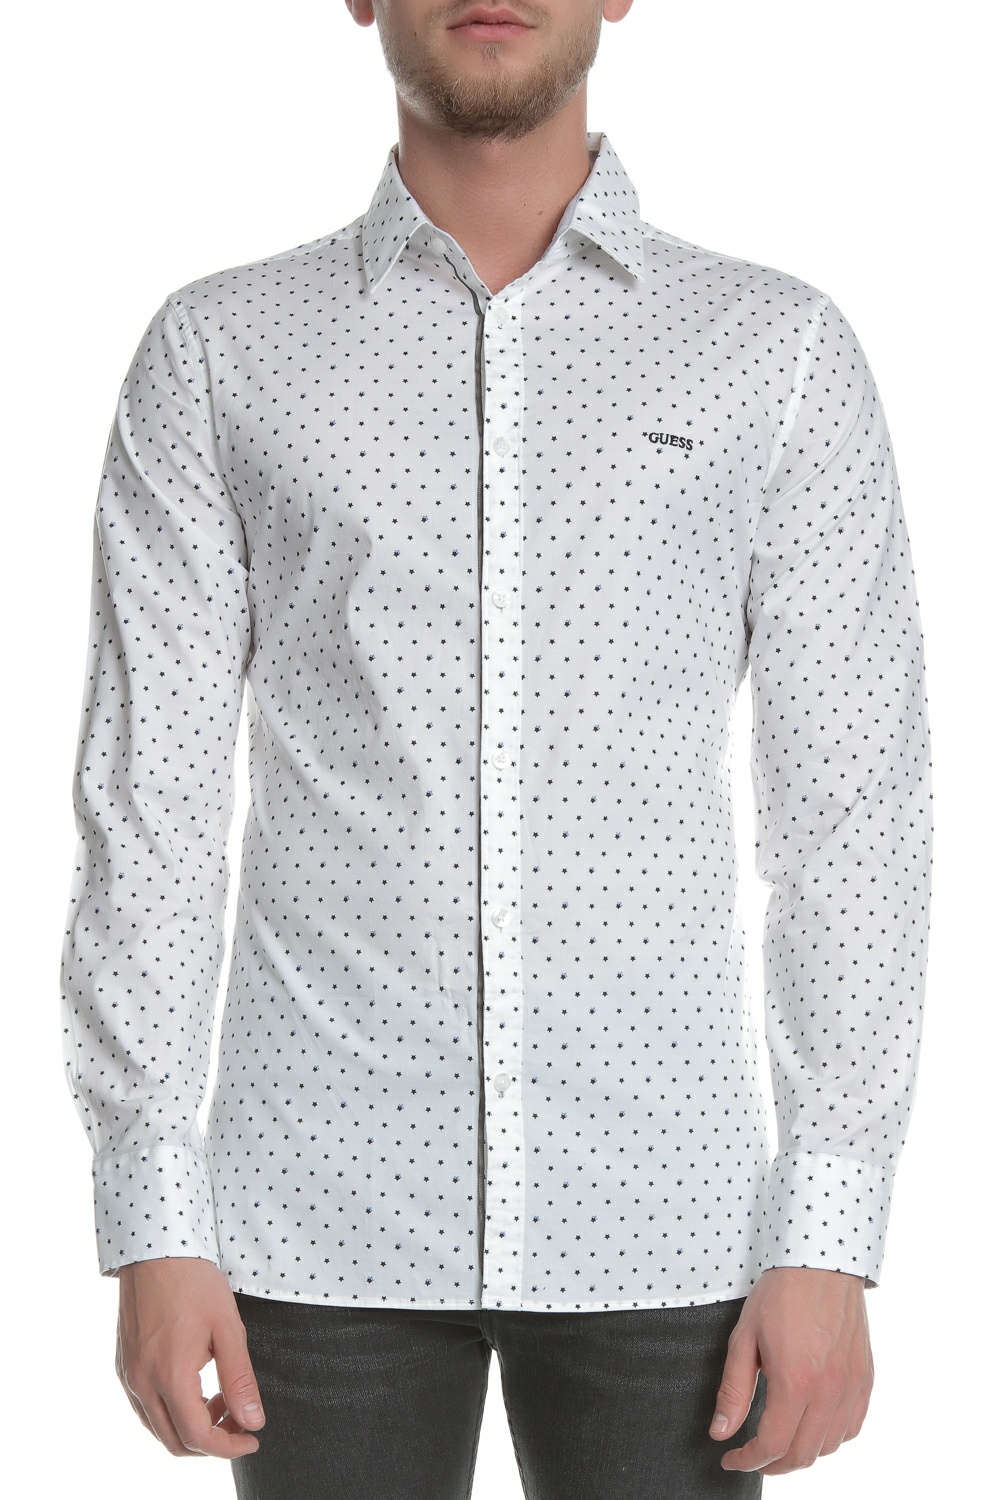 Ανδρικά/Ρούχα/Πουκάμισα/Μακρυμάνικα GUESS - Ανδρικό μακρυμάνικο πουκάμισο GUESS λευκό με print